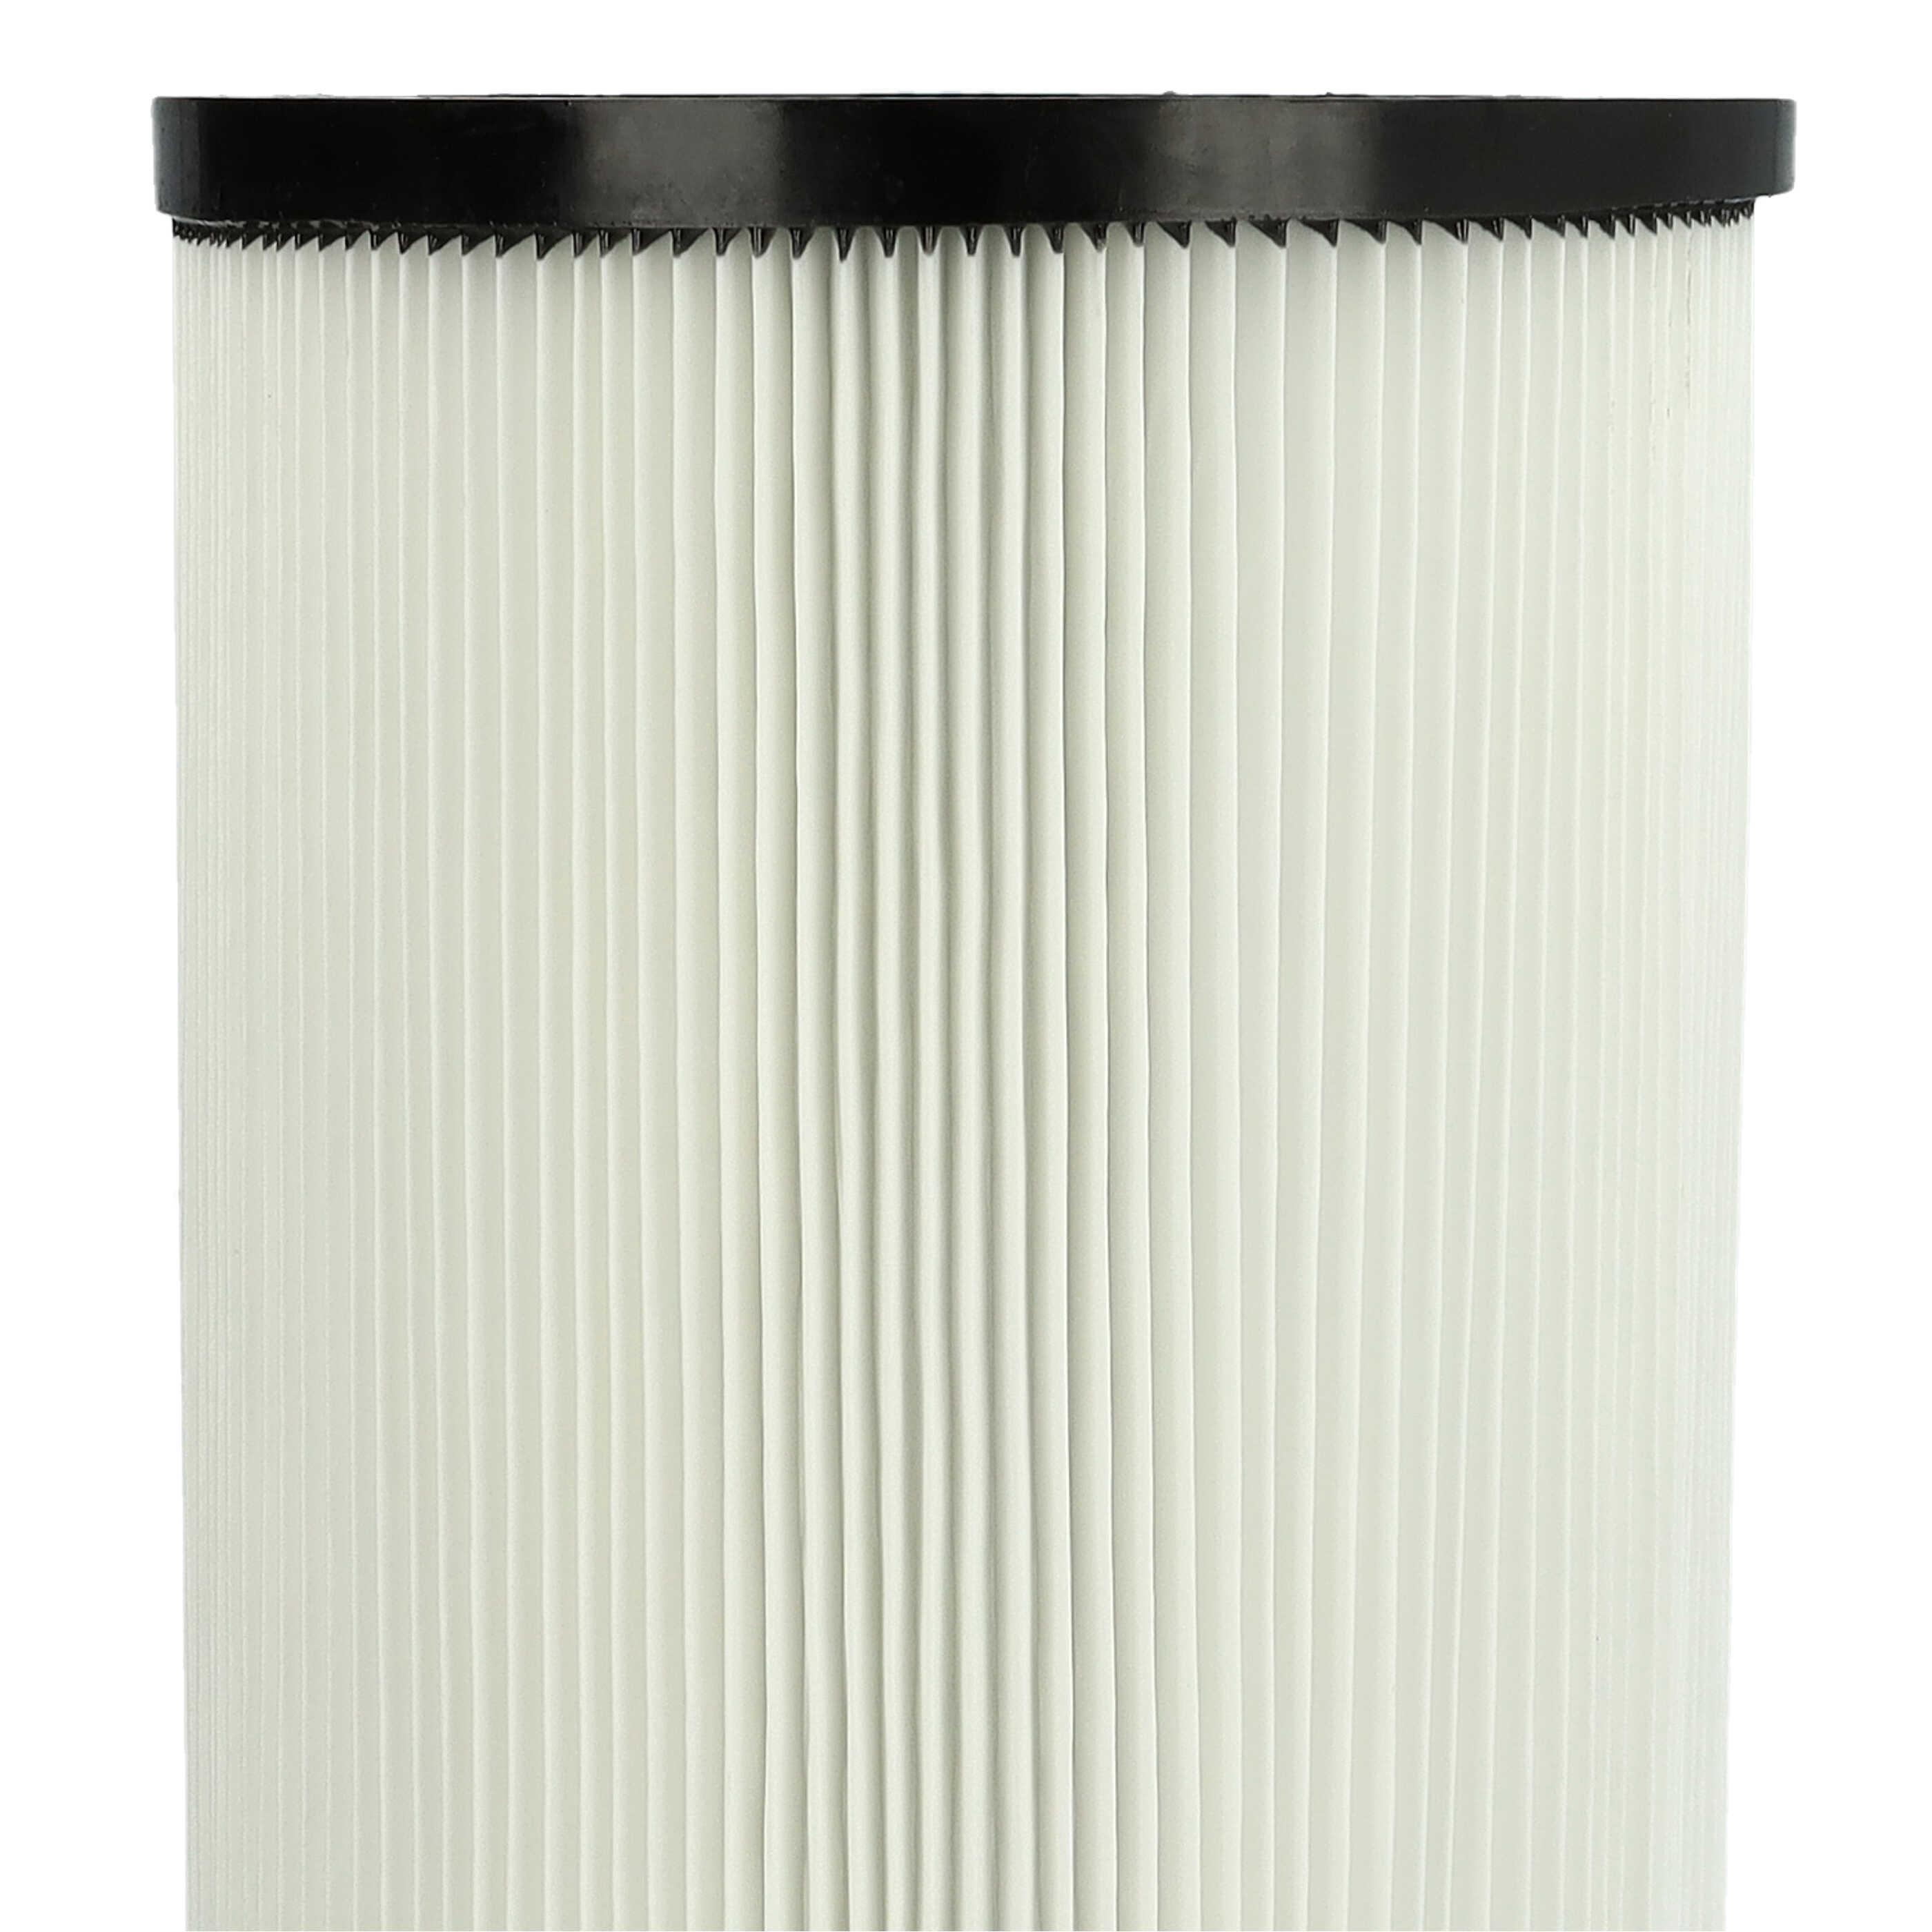 Filtro sostituisce Kärcher 9.770-988.0, 6.907-038.0 per aspirapolvere - filtro cartucce, bianco